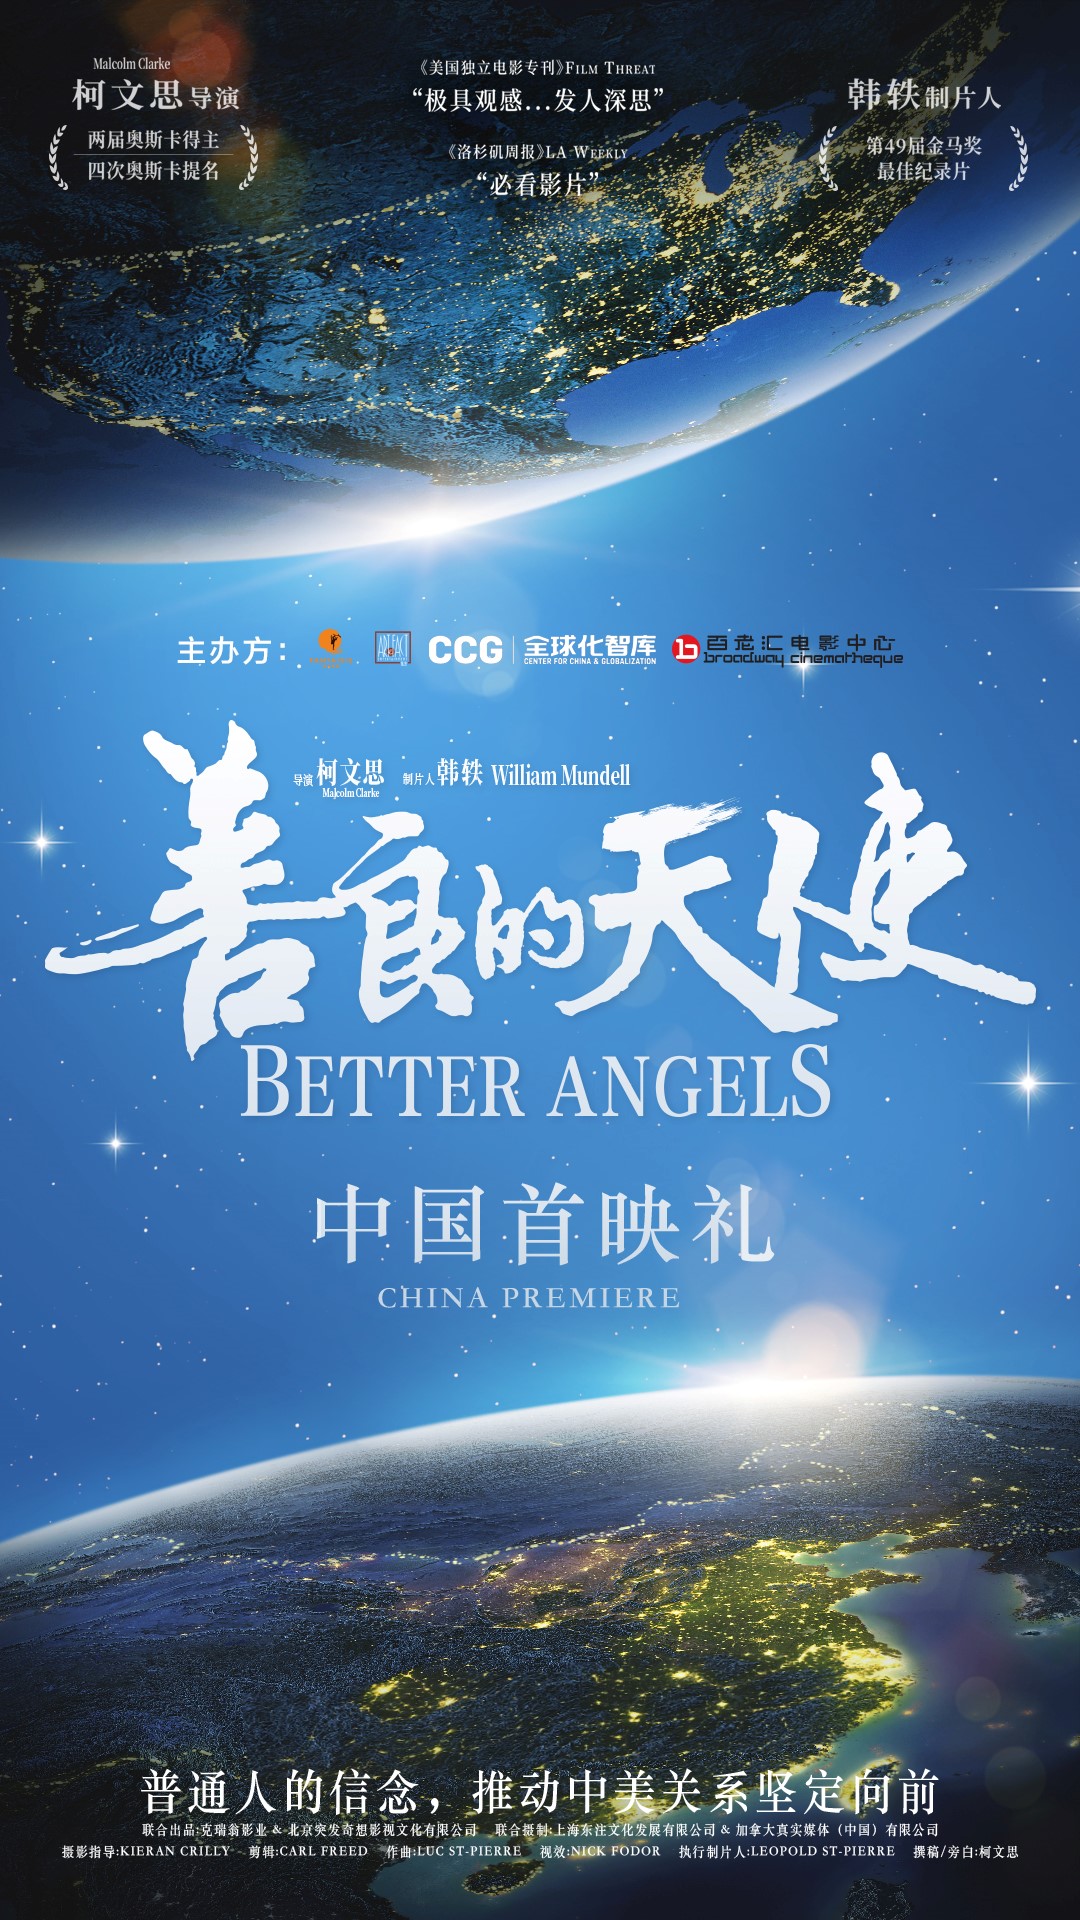 大型纪录电影《善良的天使》在京举办国内首映礼